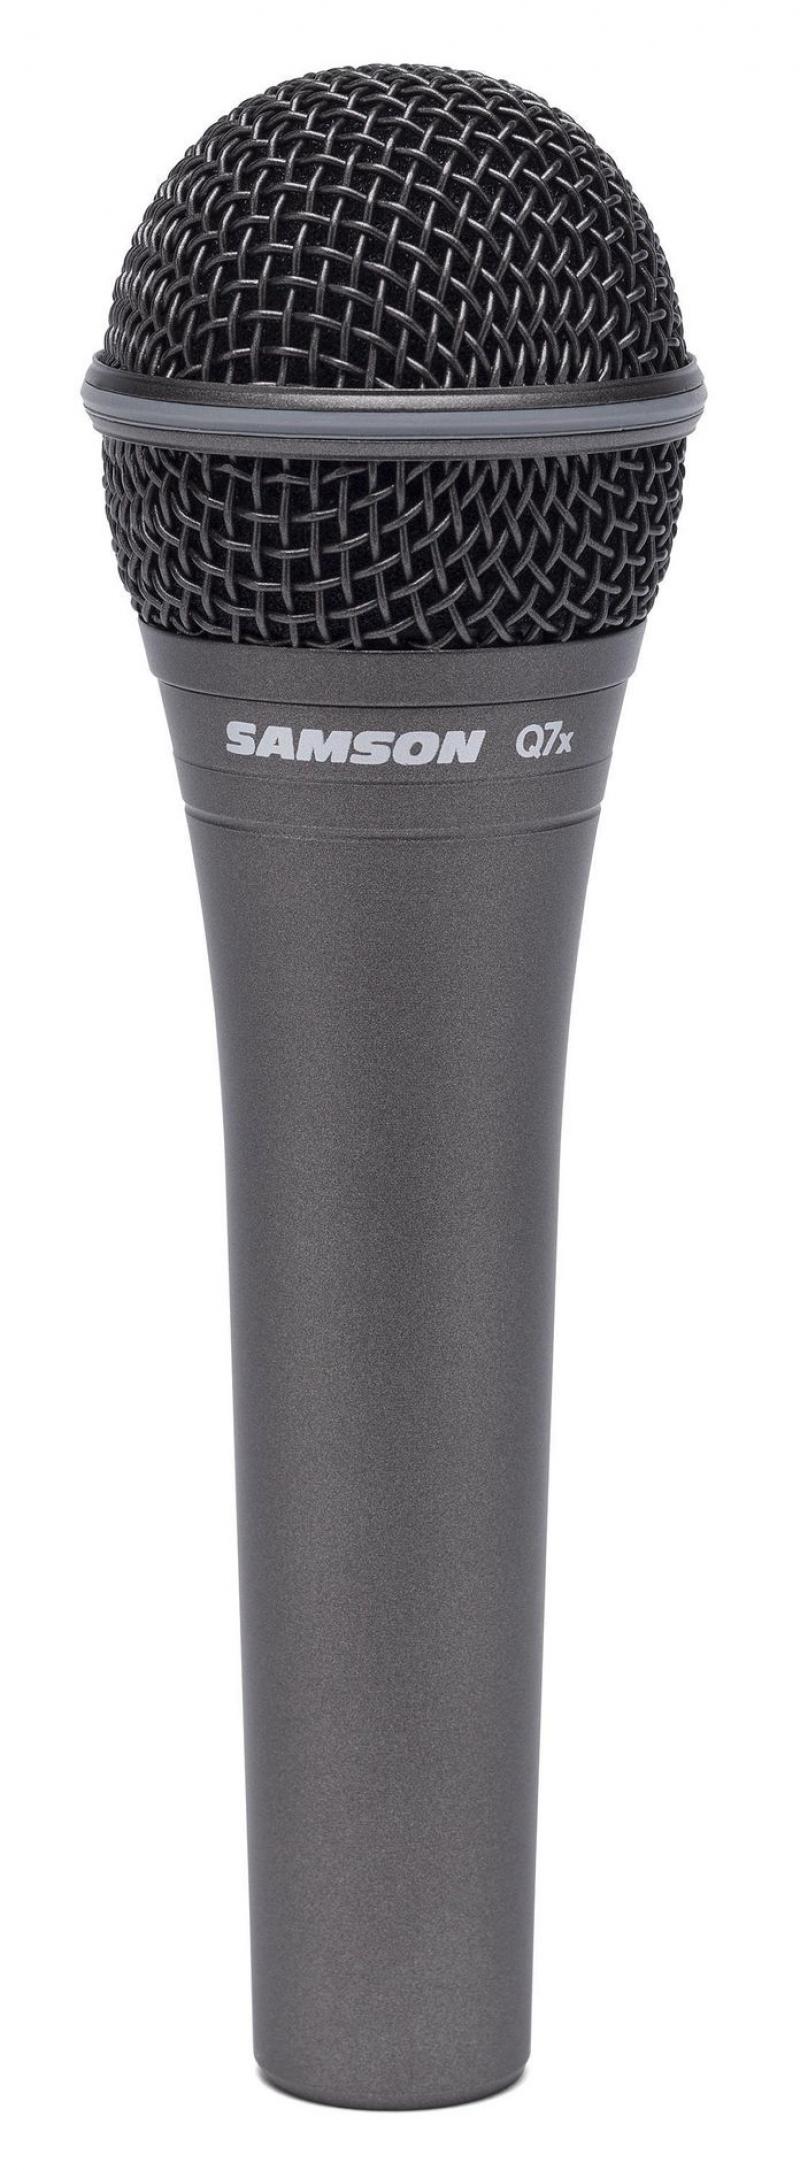 Samson Q7X Dynamic Mic